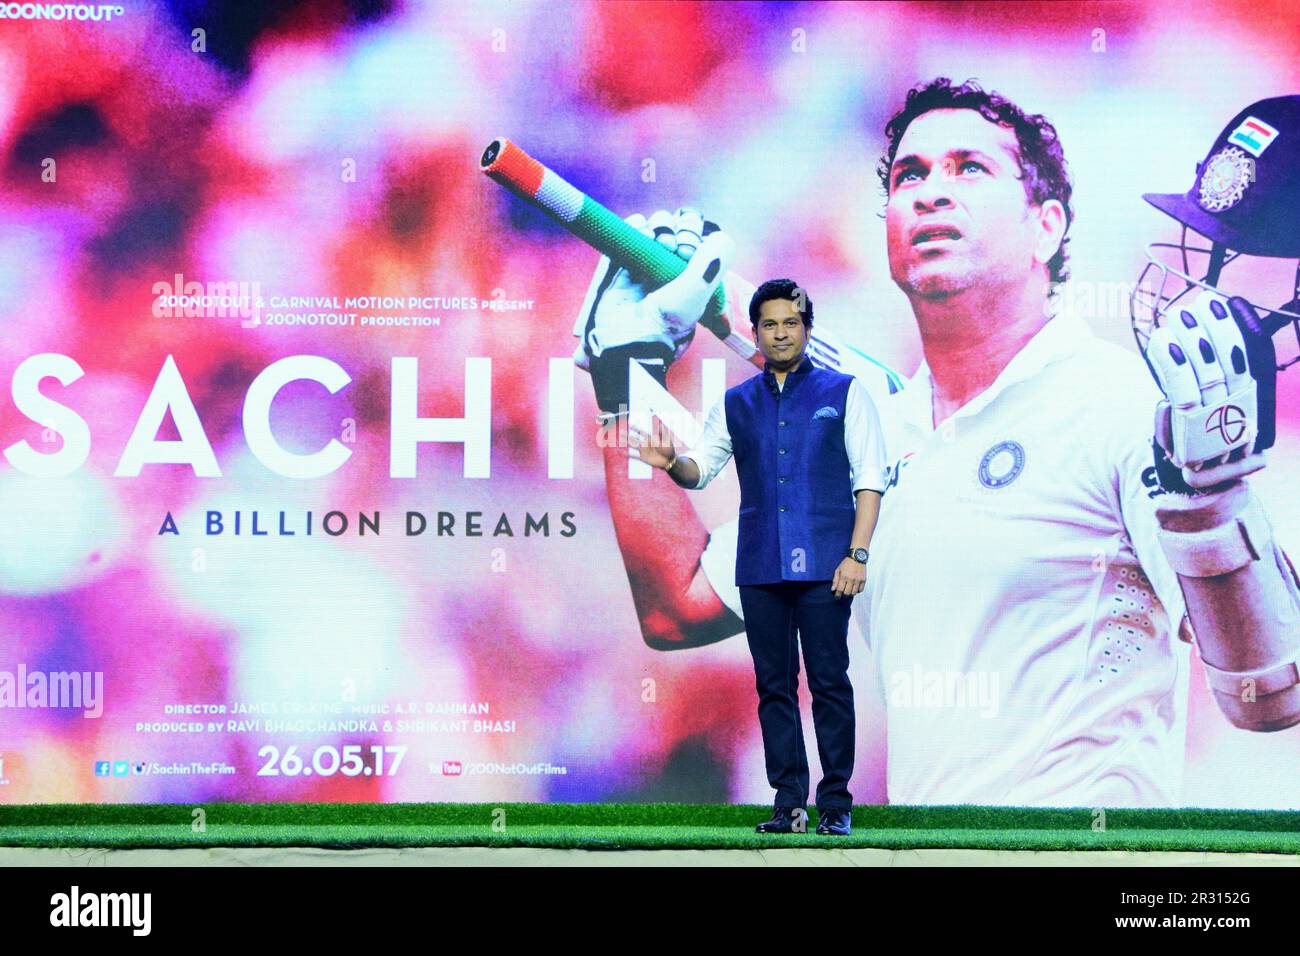 Sachin Tendulkar, cricketer indio, lanzamiento de la película, Sachin, A Billion Dreams, Mumbai, India, 9 de mayo de 2017 Foto de stock